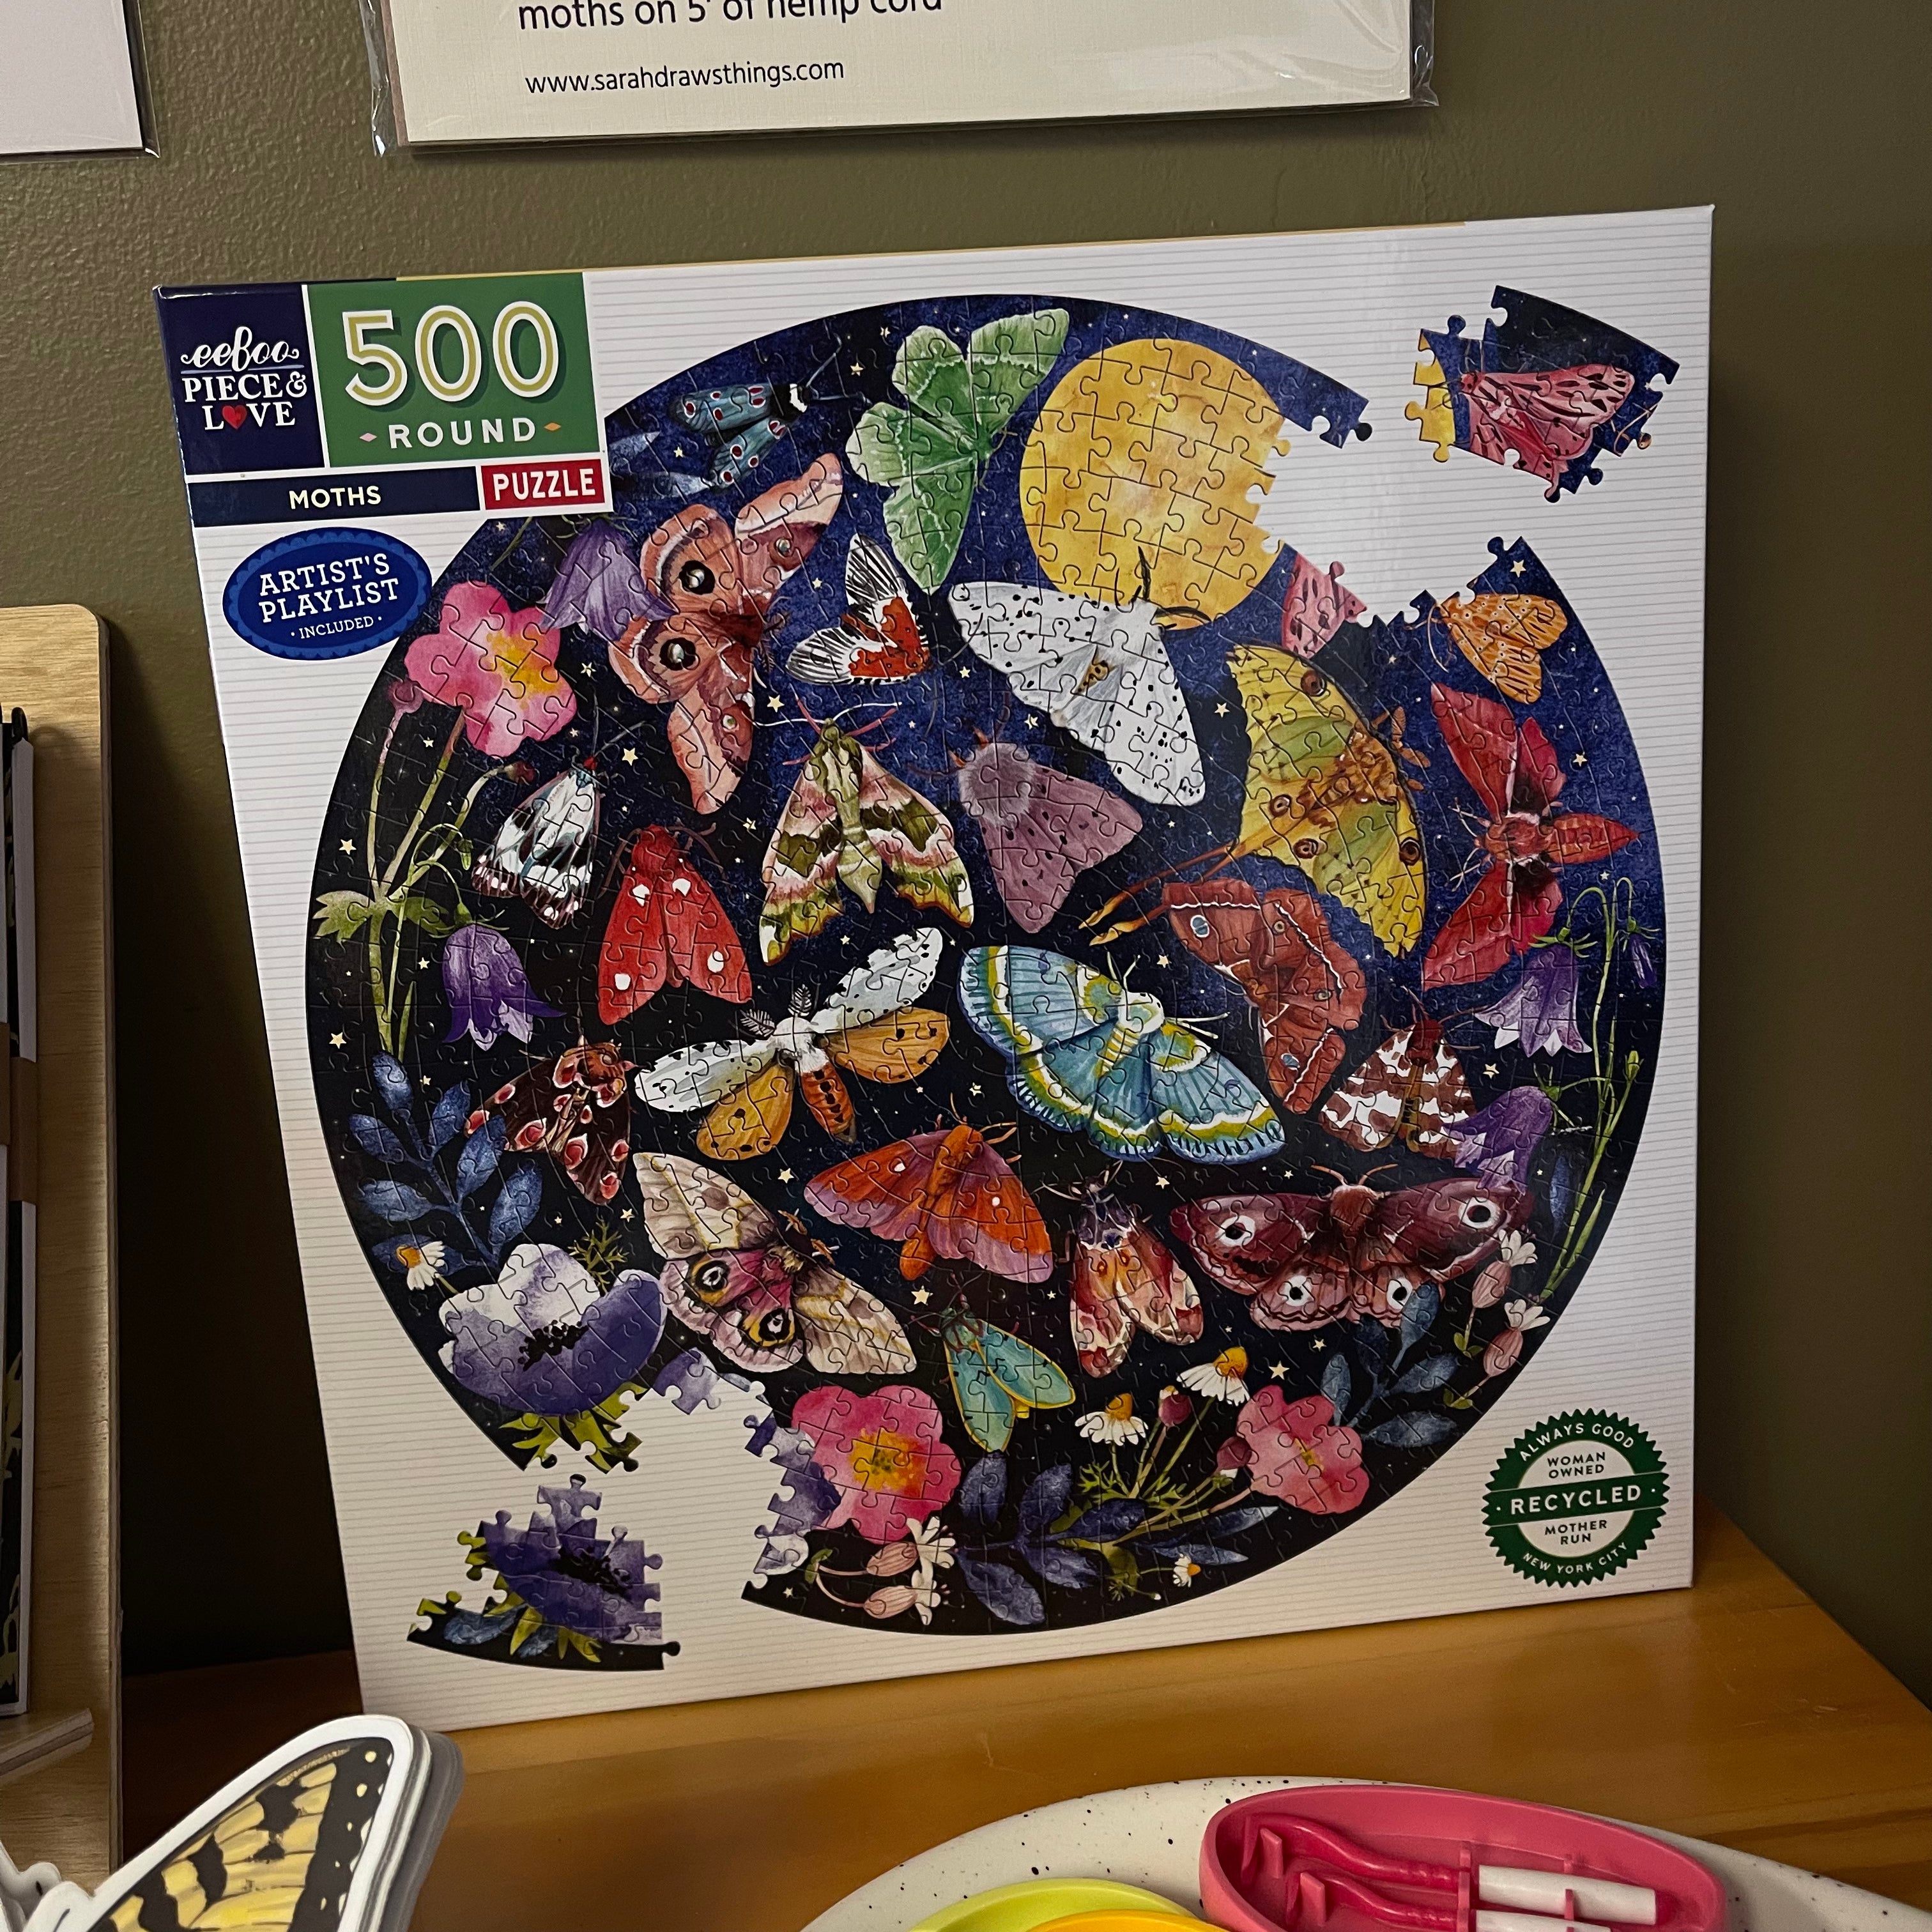 "Moths" Circular Puzzle - 500 Piece